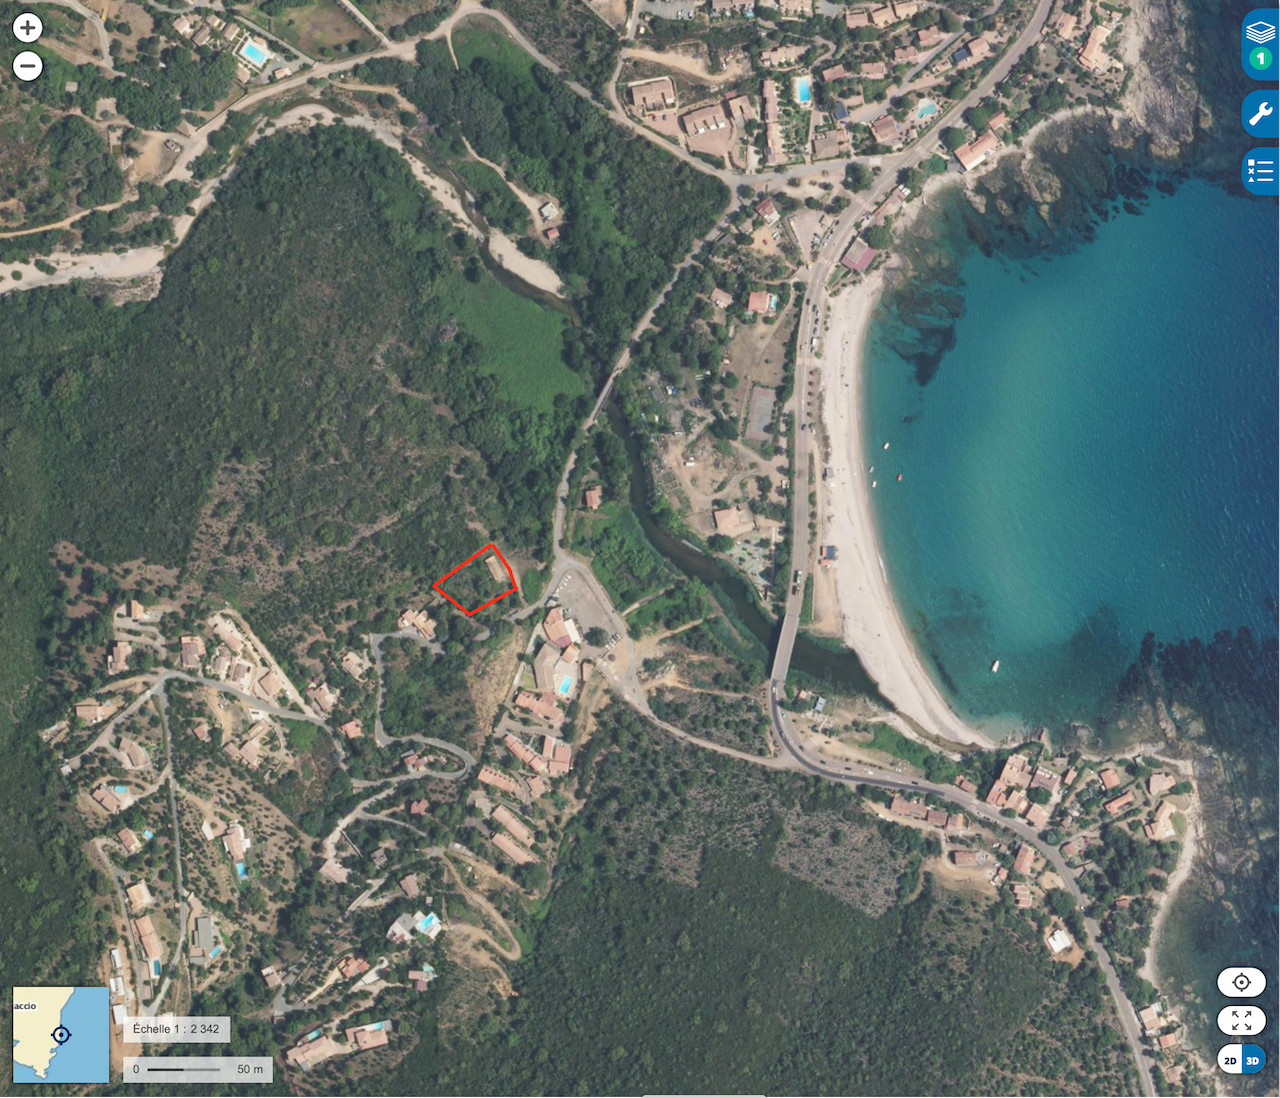 Tarco, à 200m. de la plage accessible à pied: Terrain à bâtir avec BÂTI EXISTANT et C-U OPÉRATIONNEL RÉCENT pour maison jusqu'à 160m2 hab.